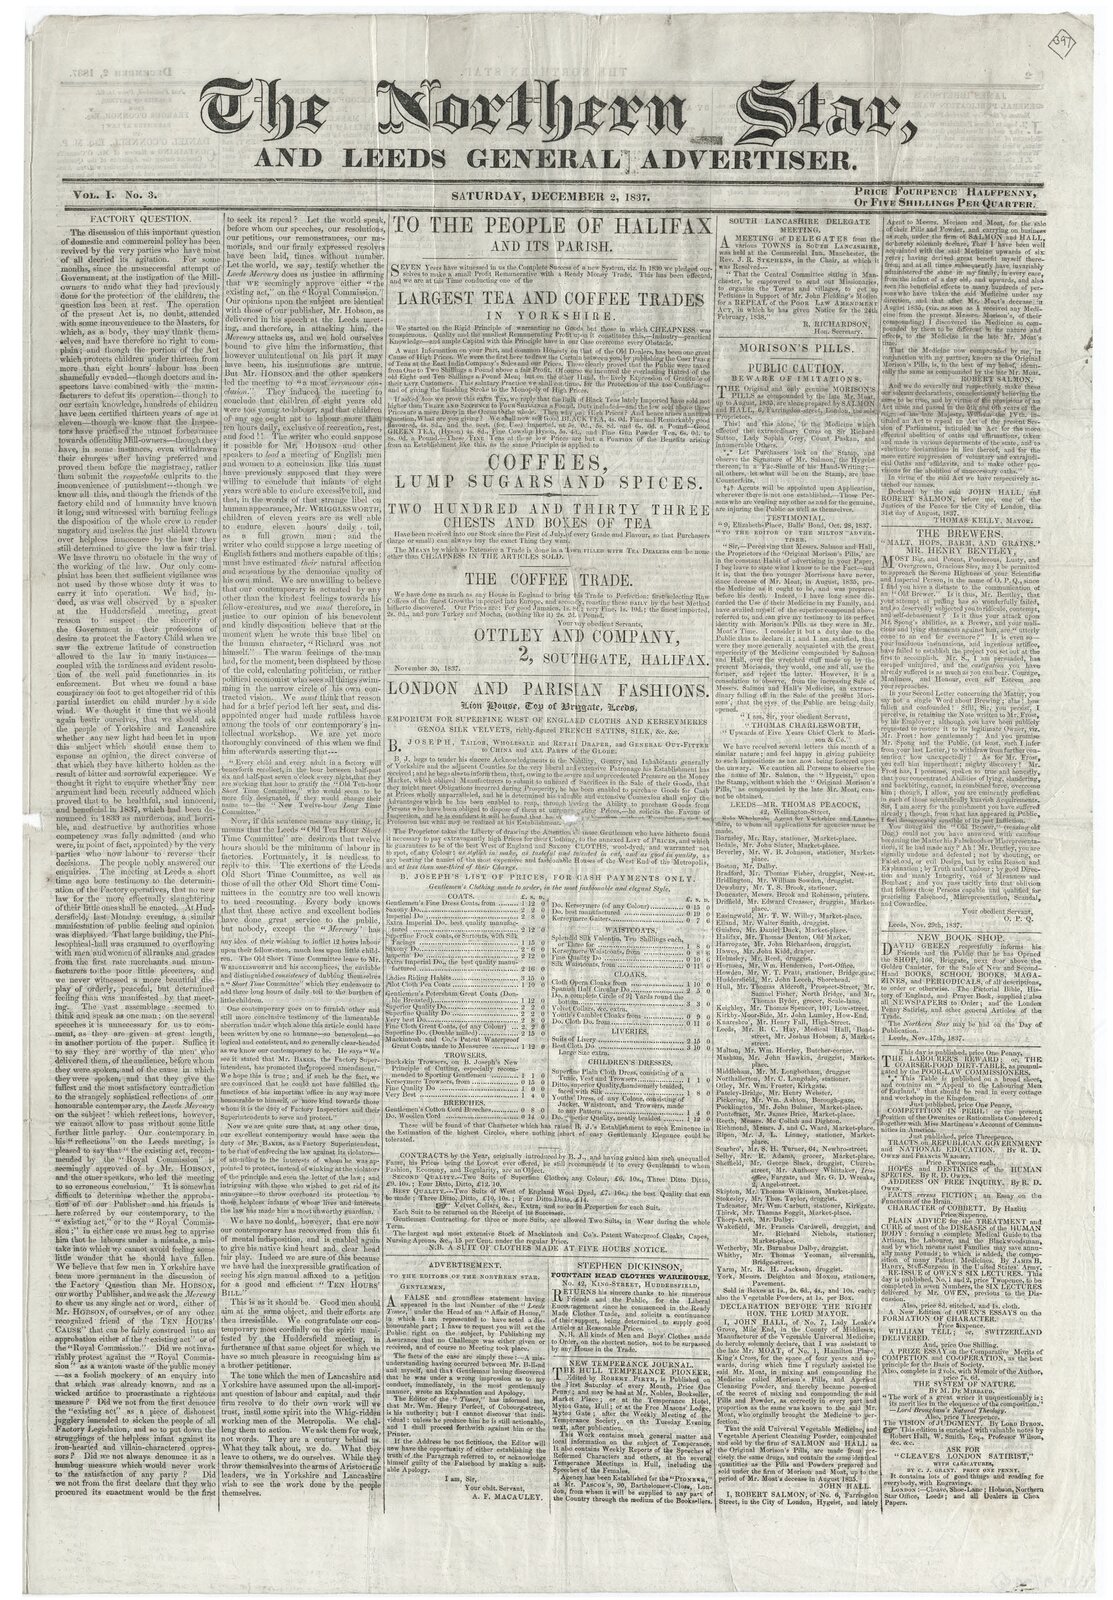 Zdjęcie przedstawia stronę papierowej gazety. Jest ona cała zadrukowana tekstem zapisanym czarną czcionką. W jej górnej części znajduje się tytuł. 